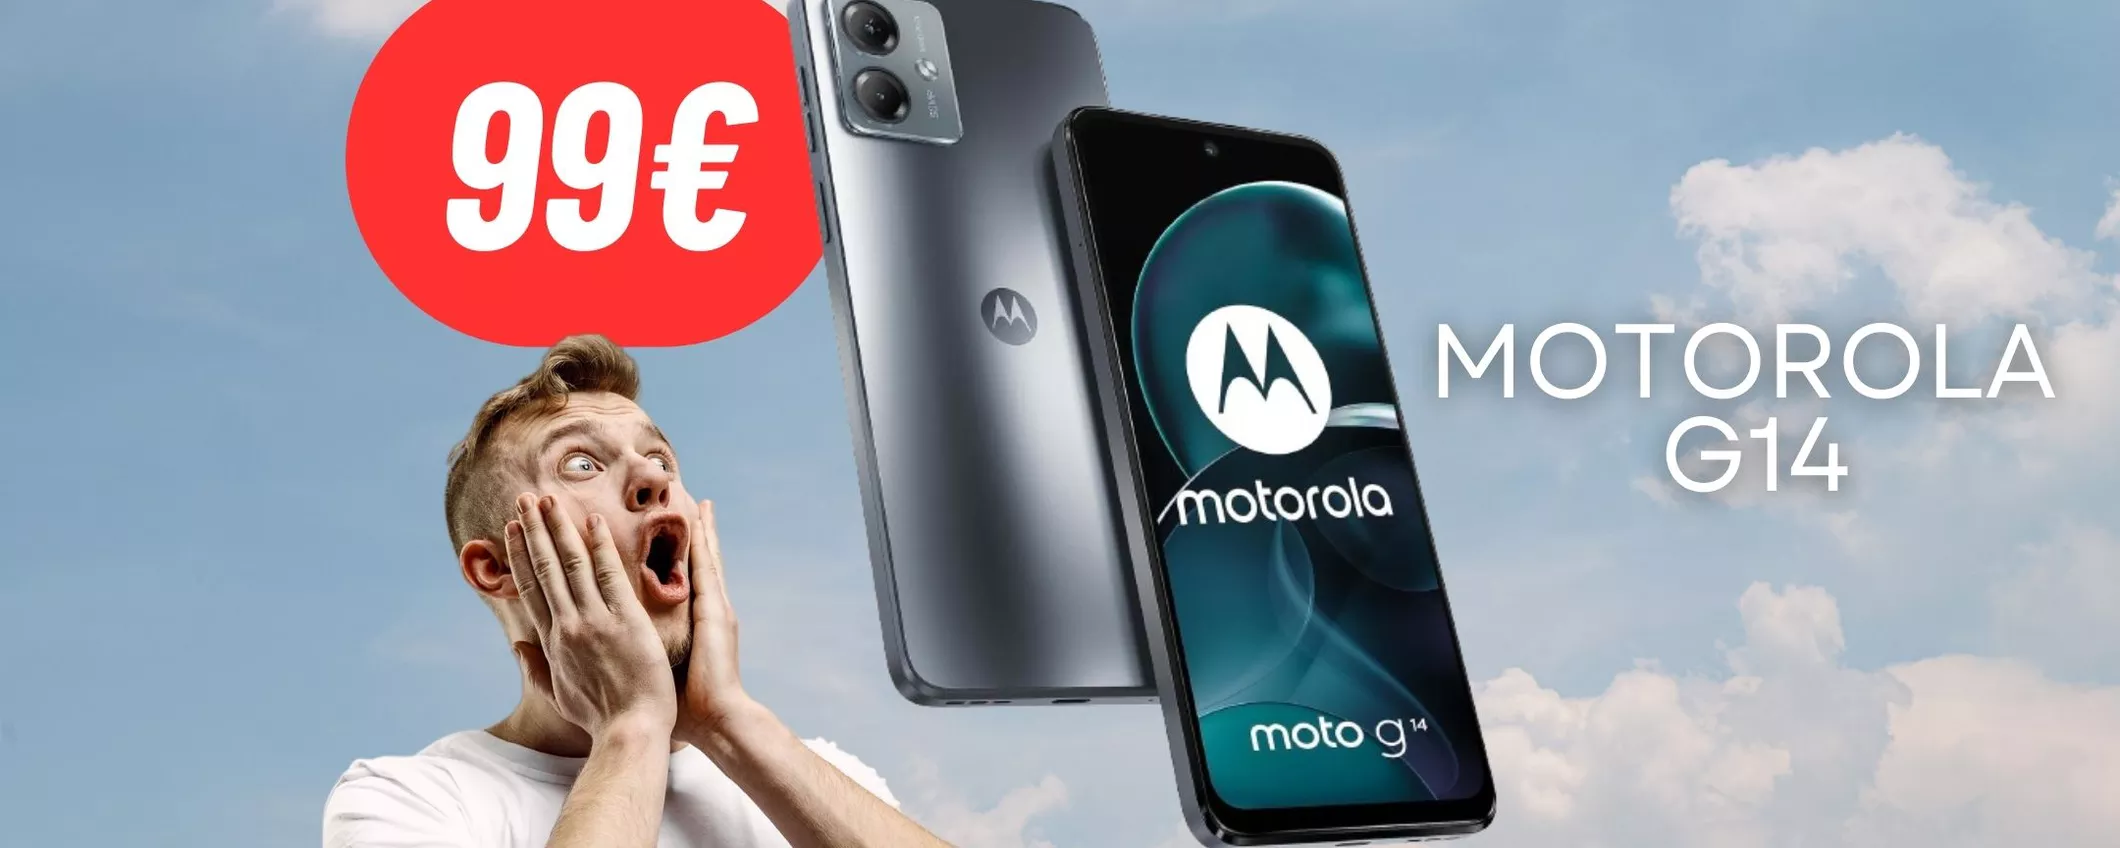 DISINTEGRATO IL PREZZO del Motorola G14: lo smartphone costa solo 99€ (-34%)